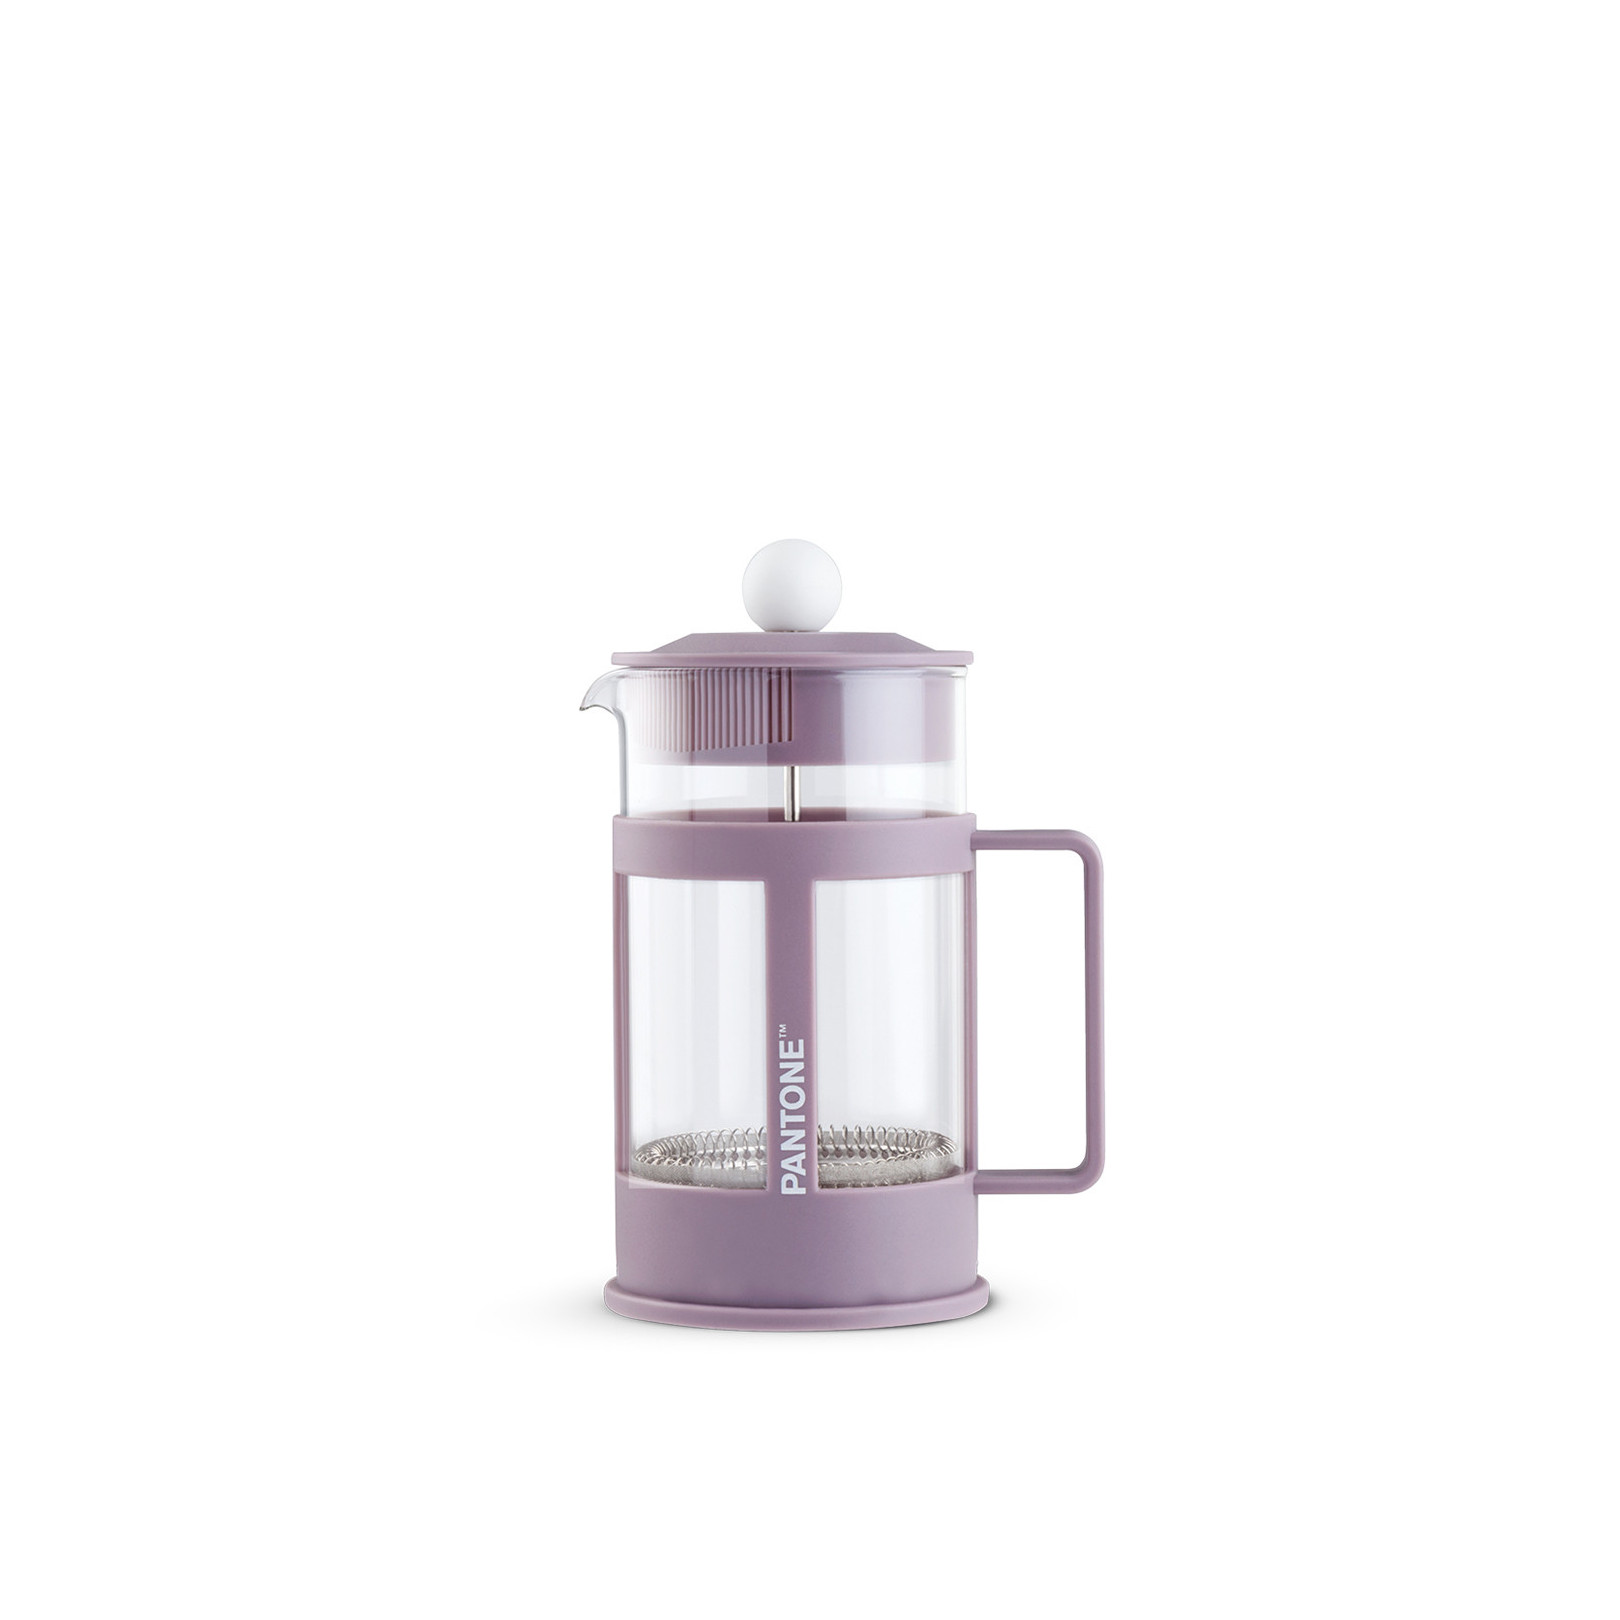 Pantone Linear fiolet  - Zaparzacz do kawy 600 ml